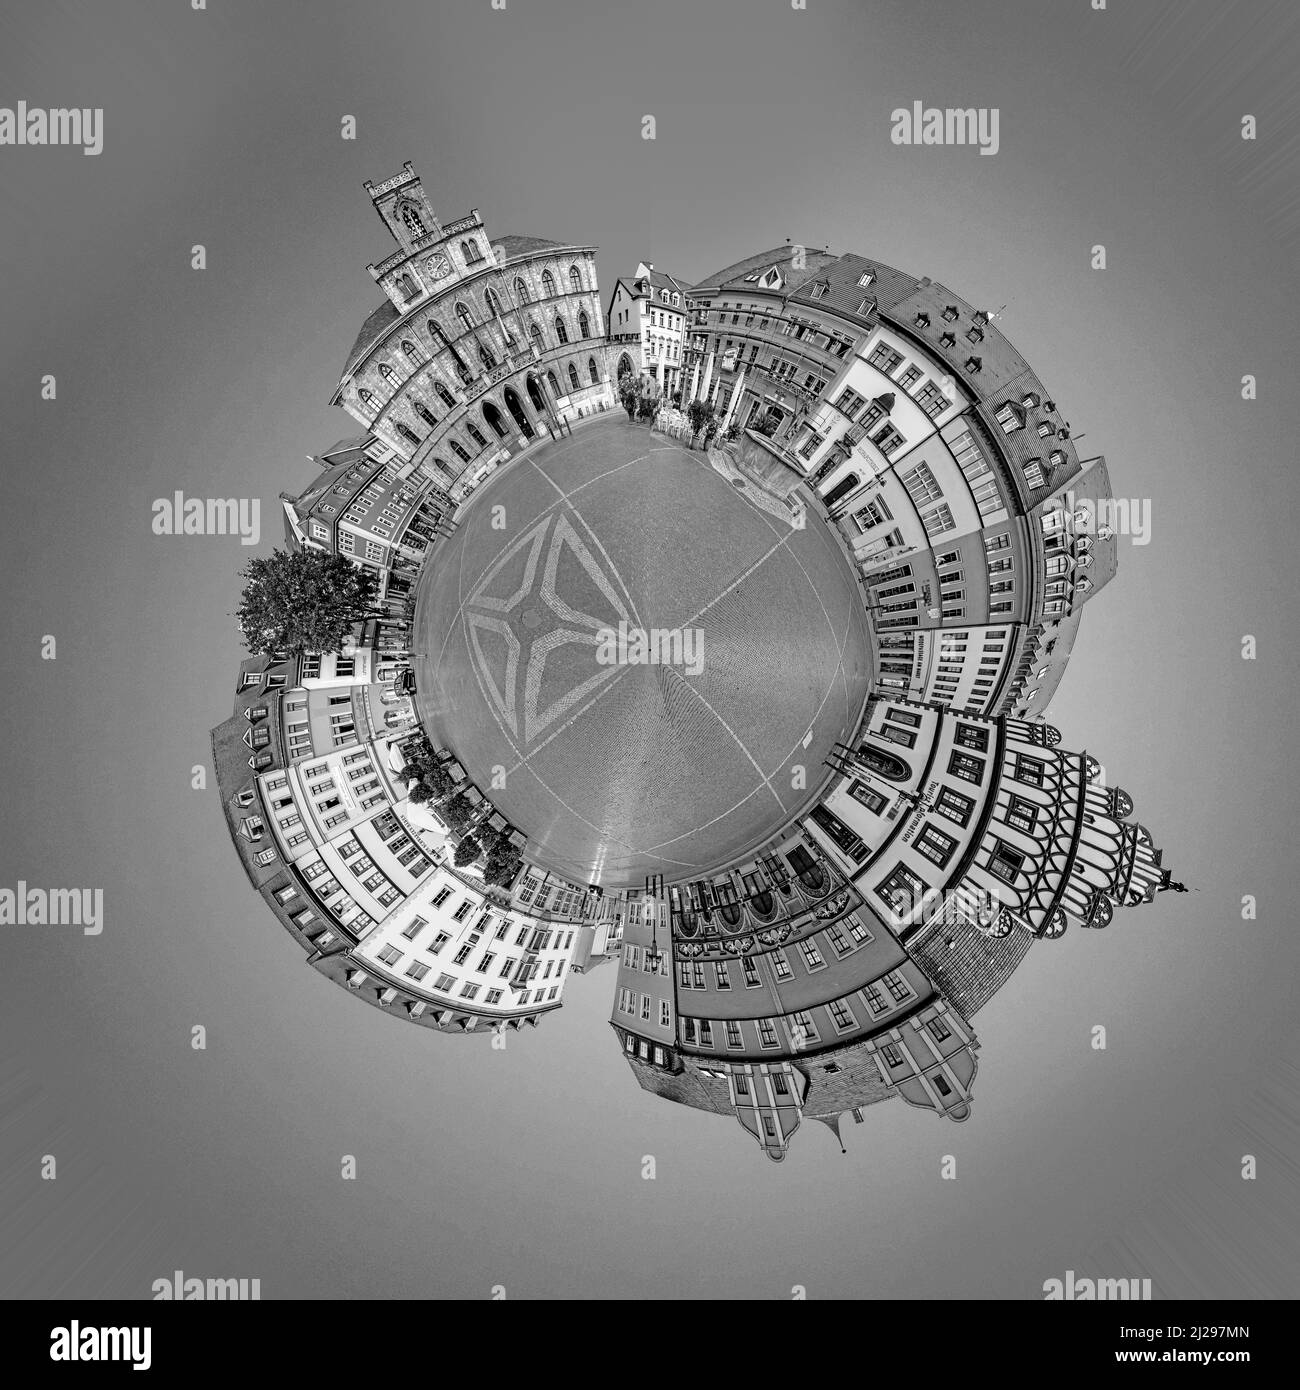 Weimar, Allemagne - 28 juillet 2018 : vue panoramique de l'ancienne place du marché de Weimar dans un format de planète minuscule avec célèbre hôtel de ville. Banque D'Images